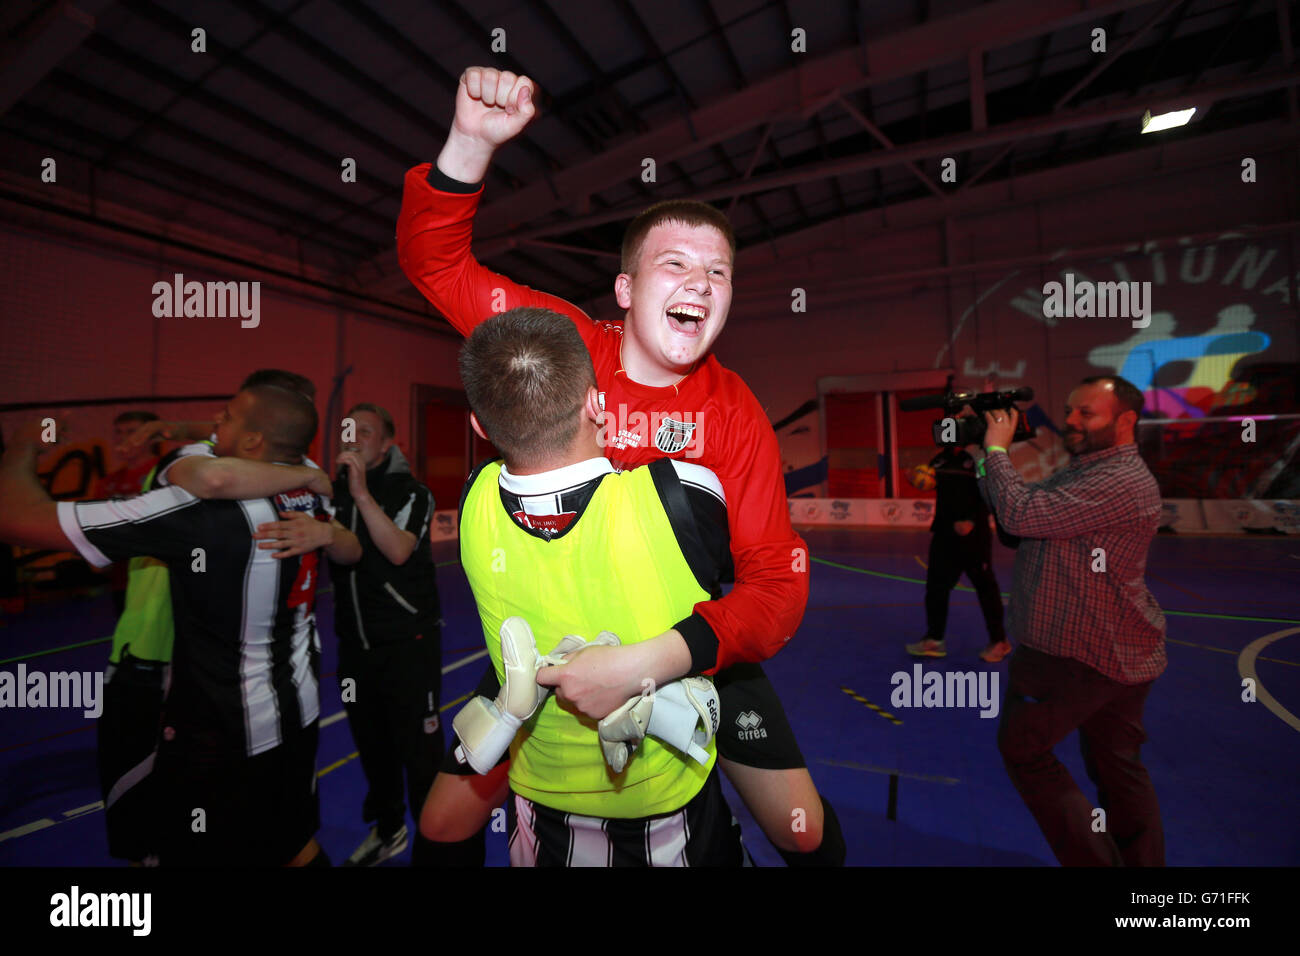 Grimsby Town célèbre la victoire de la finale du football AM Futsal Banque D'Images